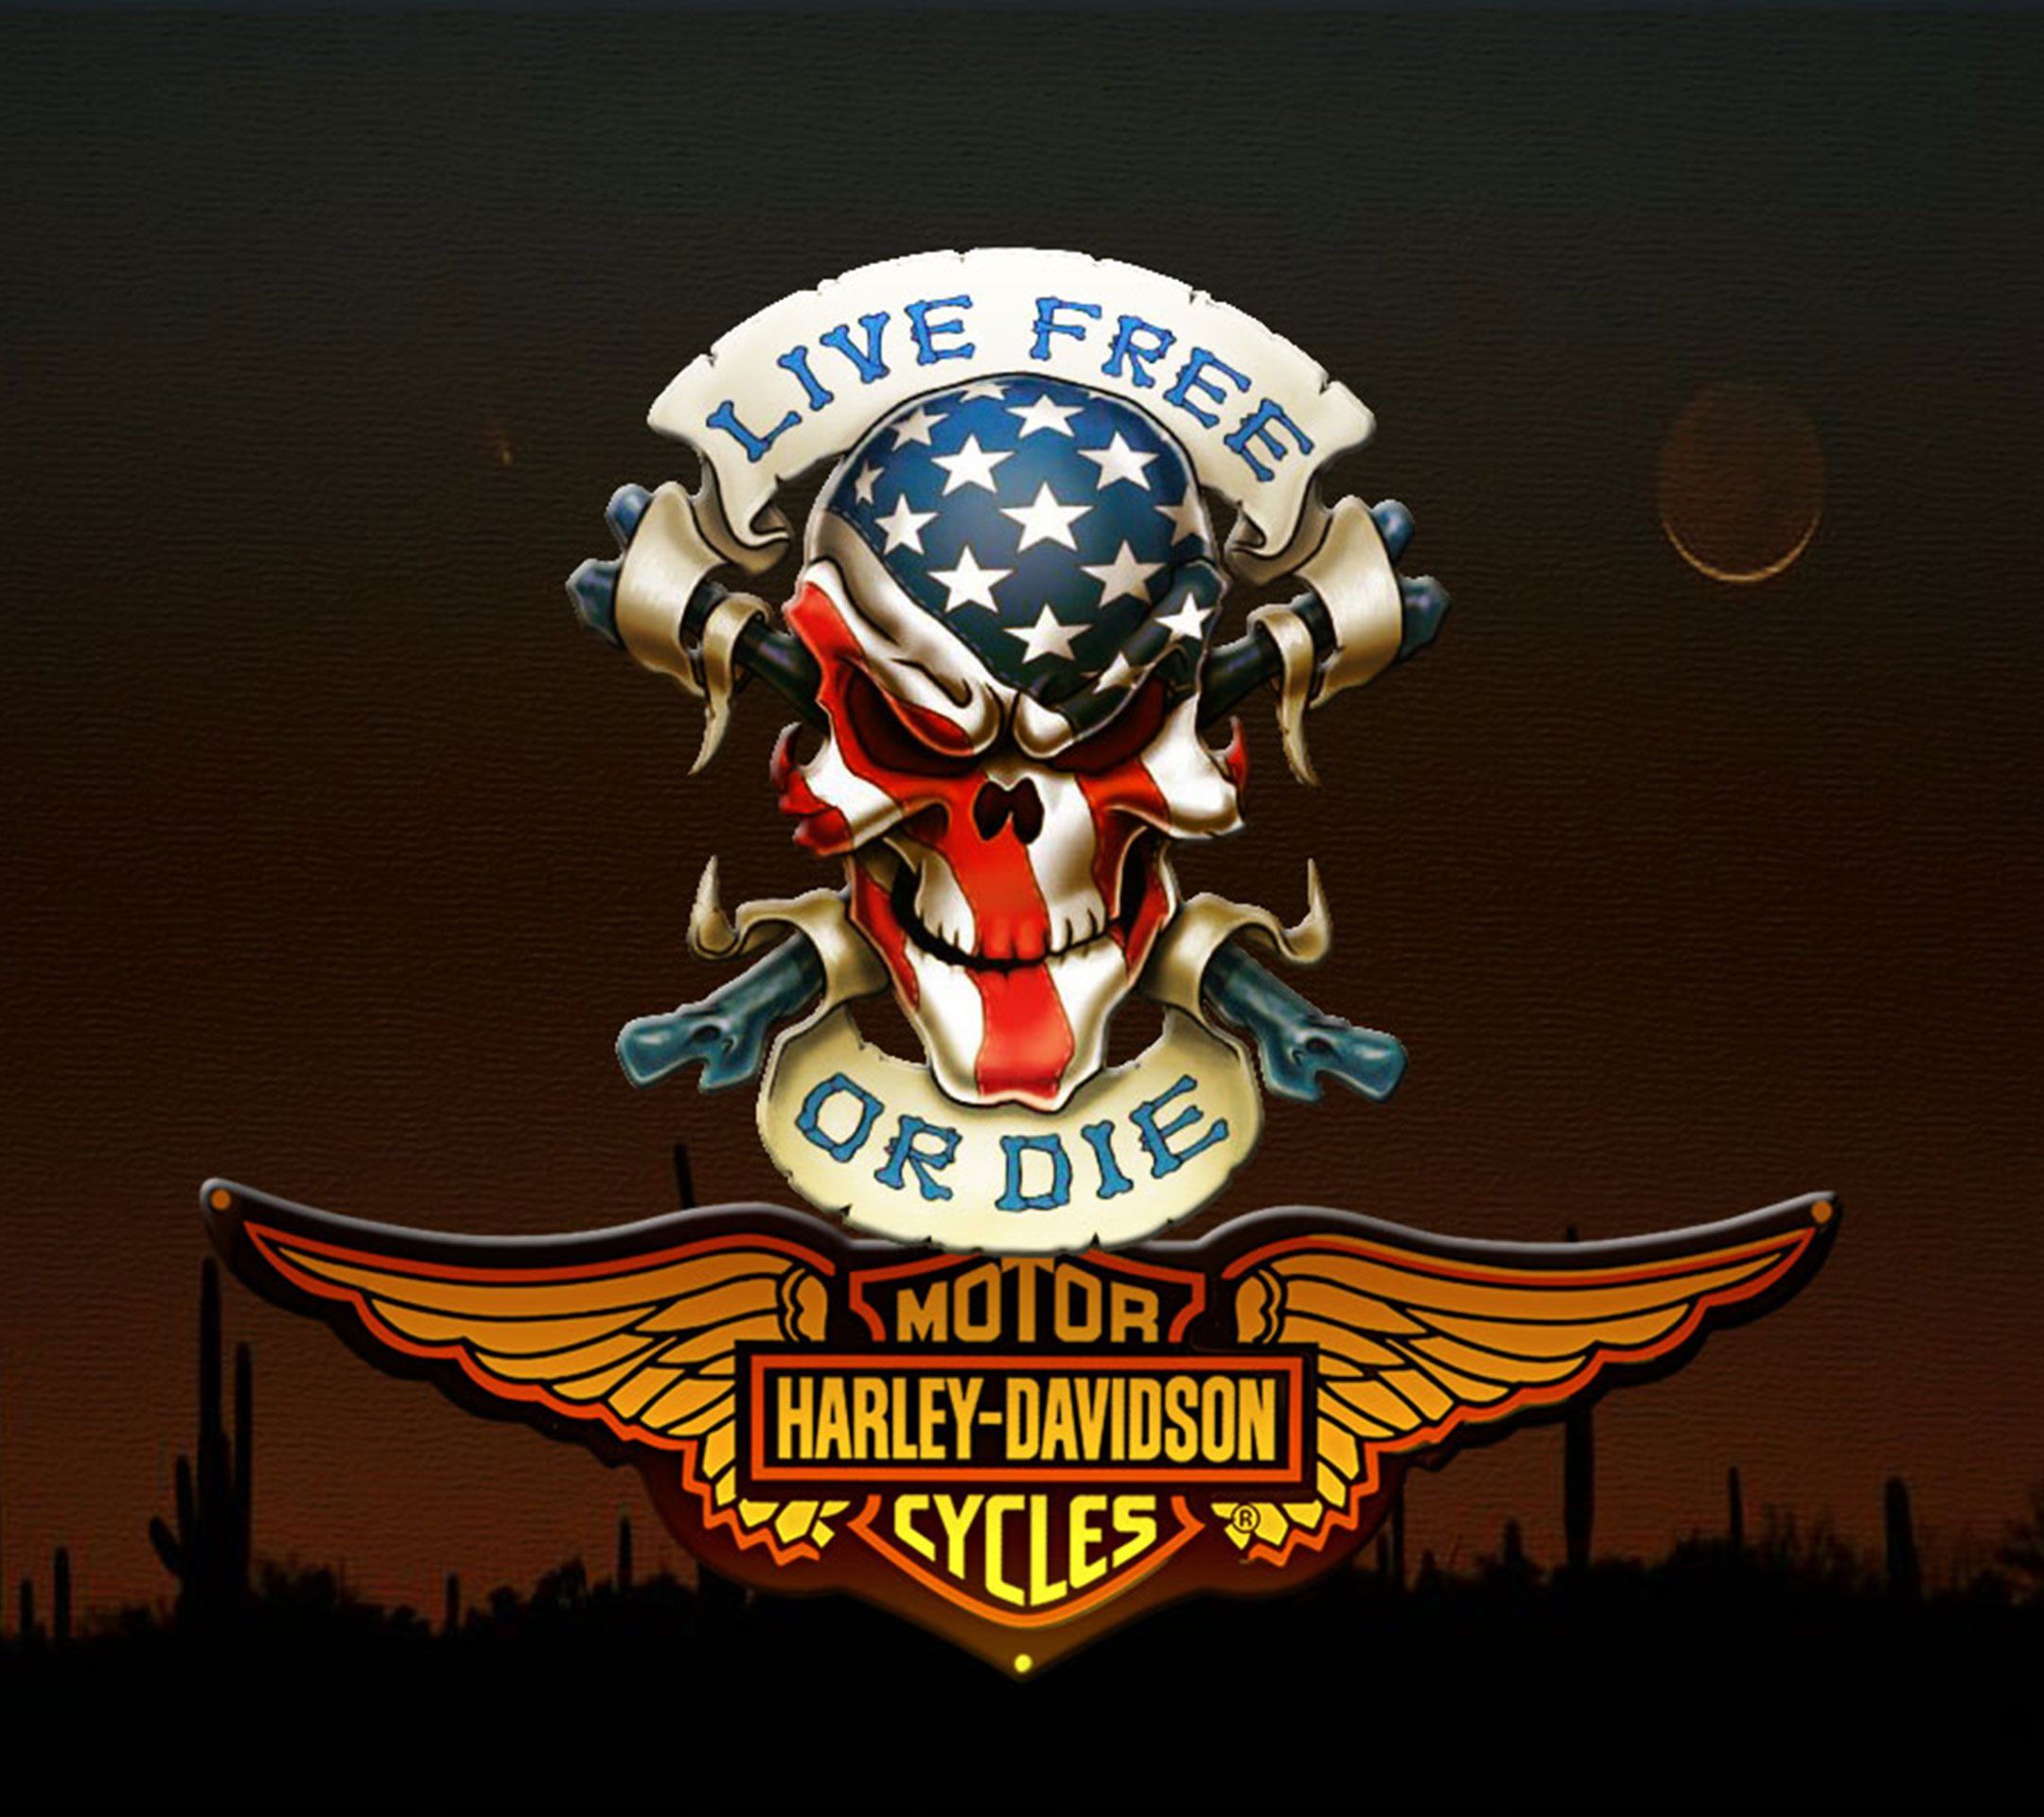 harley davidson de pantalla en vivo,emblema,fuente,cresta,ilustración,campeonato